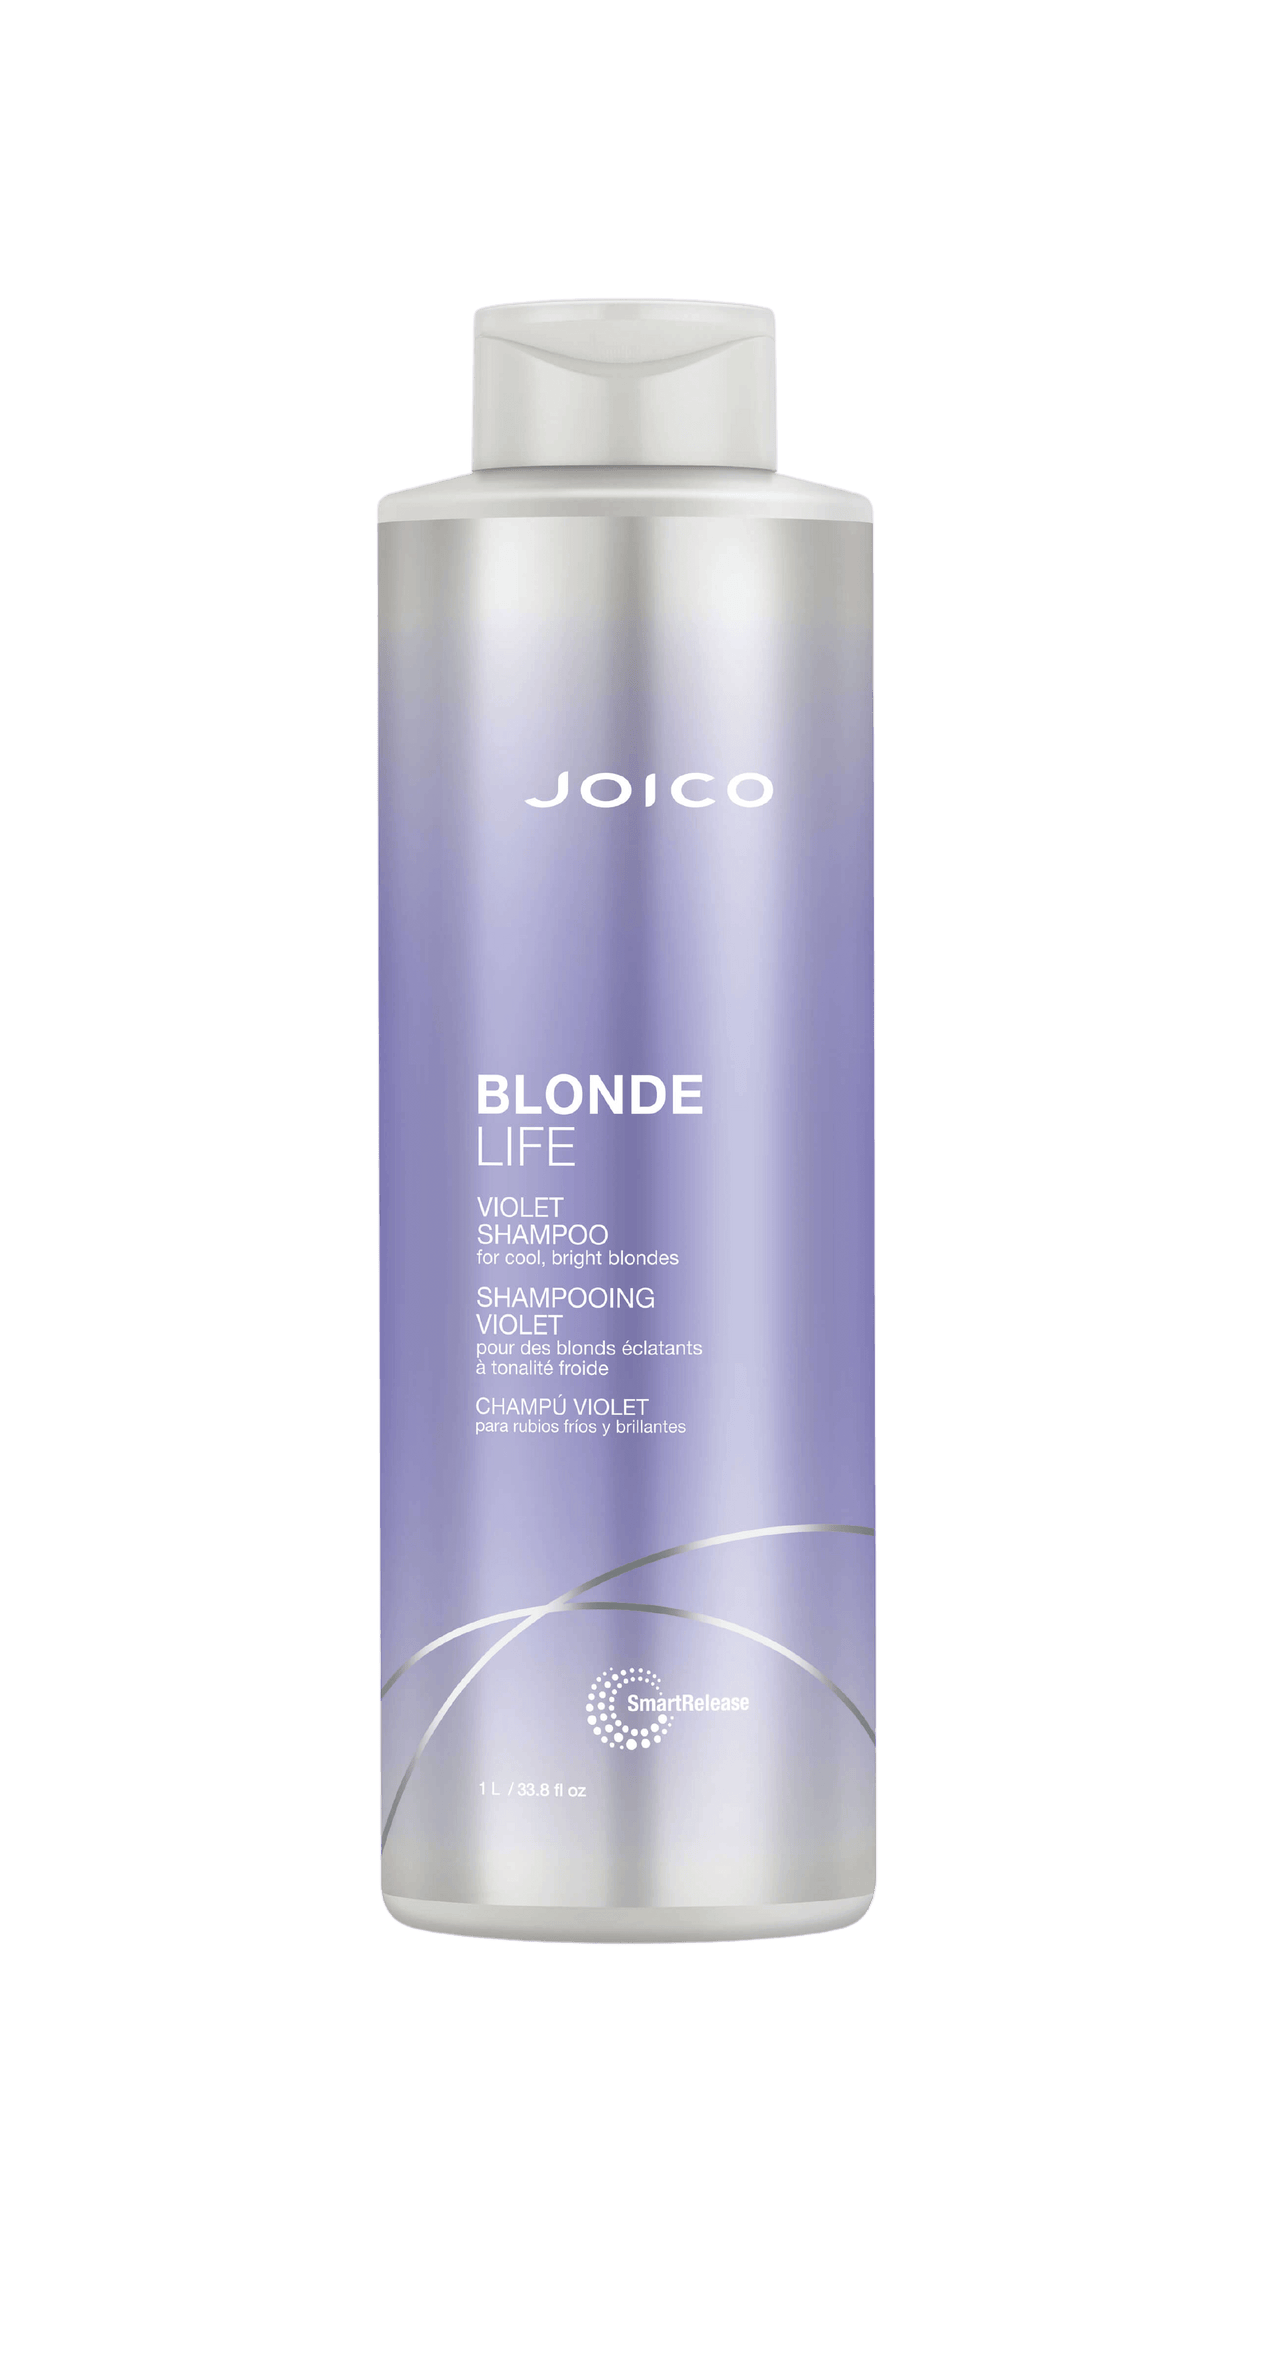 Joico Blonde Life Violet Shampoo 33.8oz Bottle